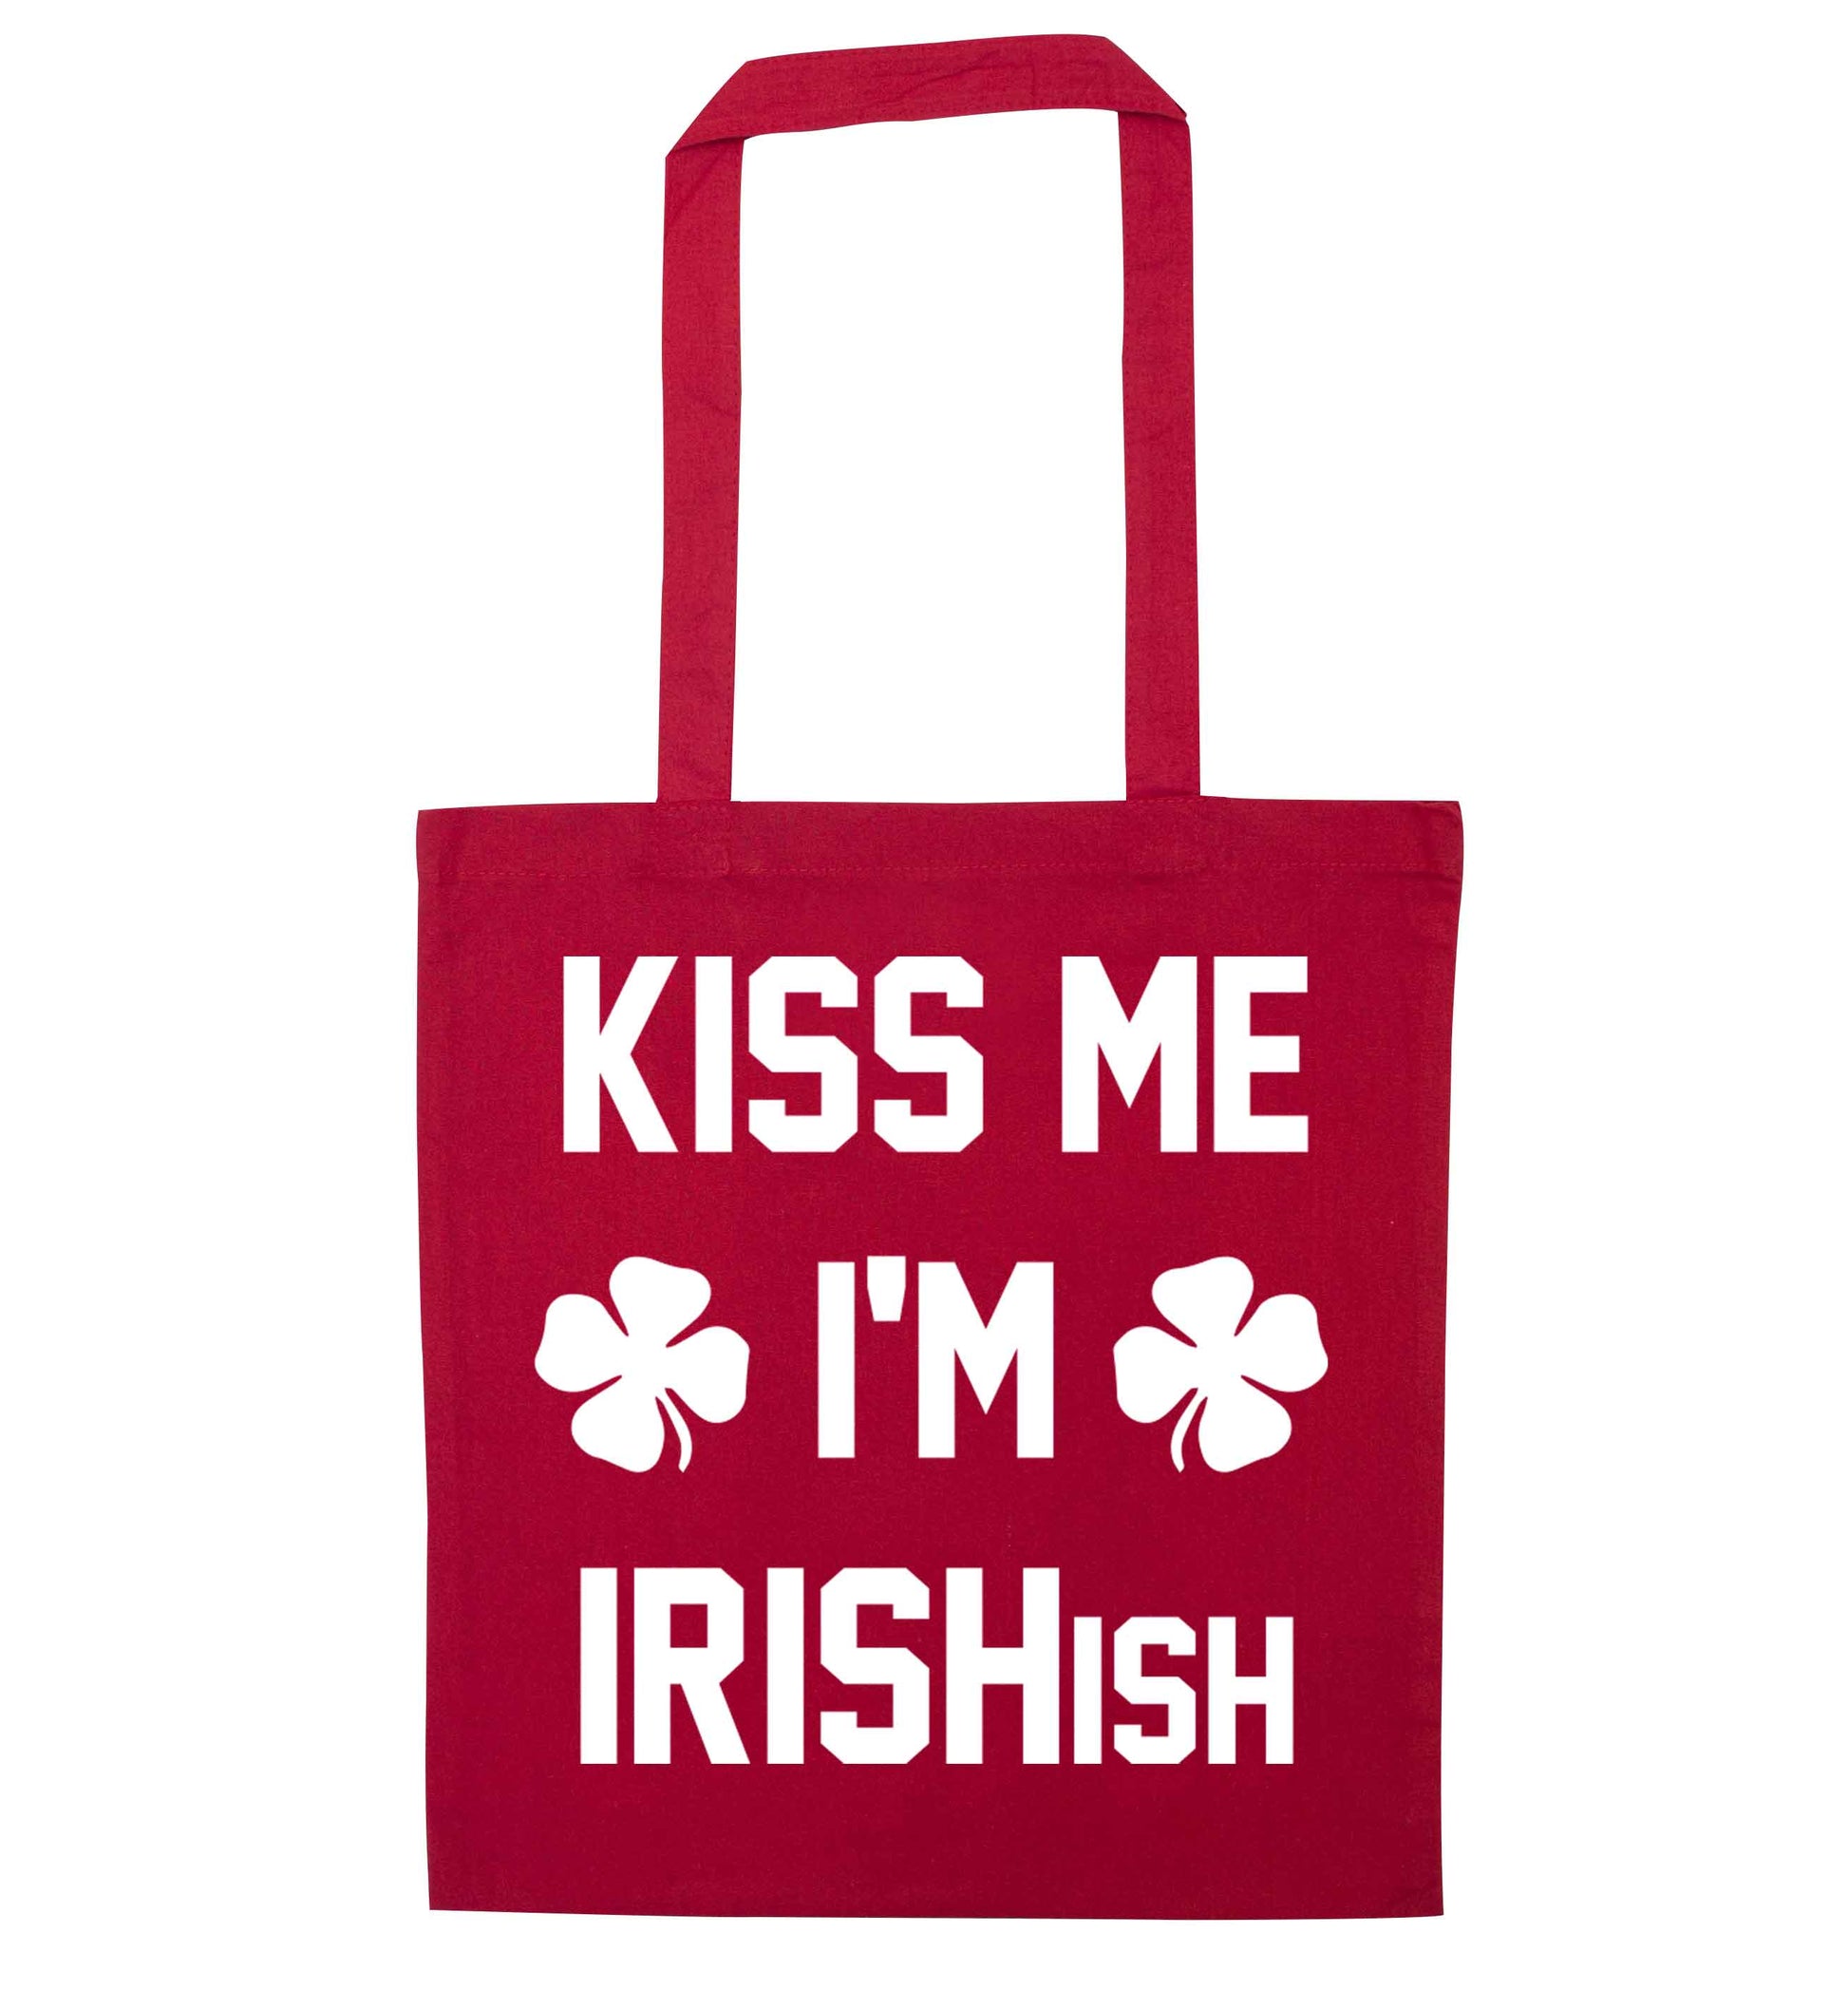 Kiss me I'm Irishish red tote bag